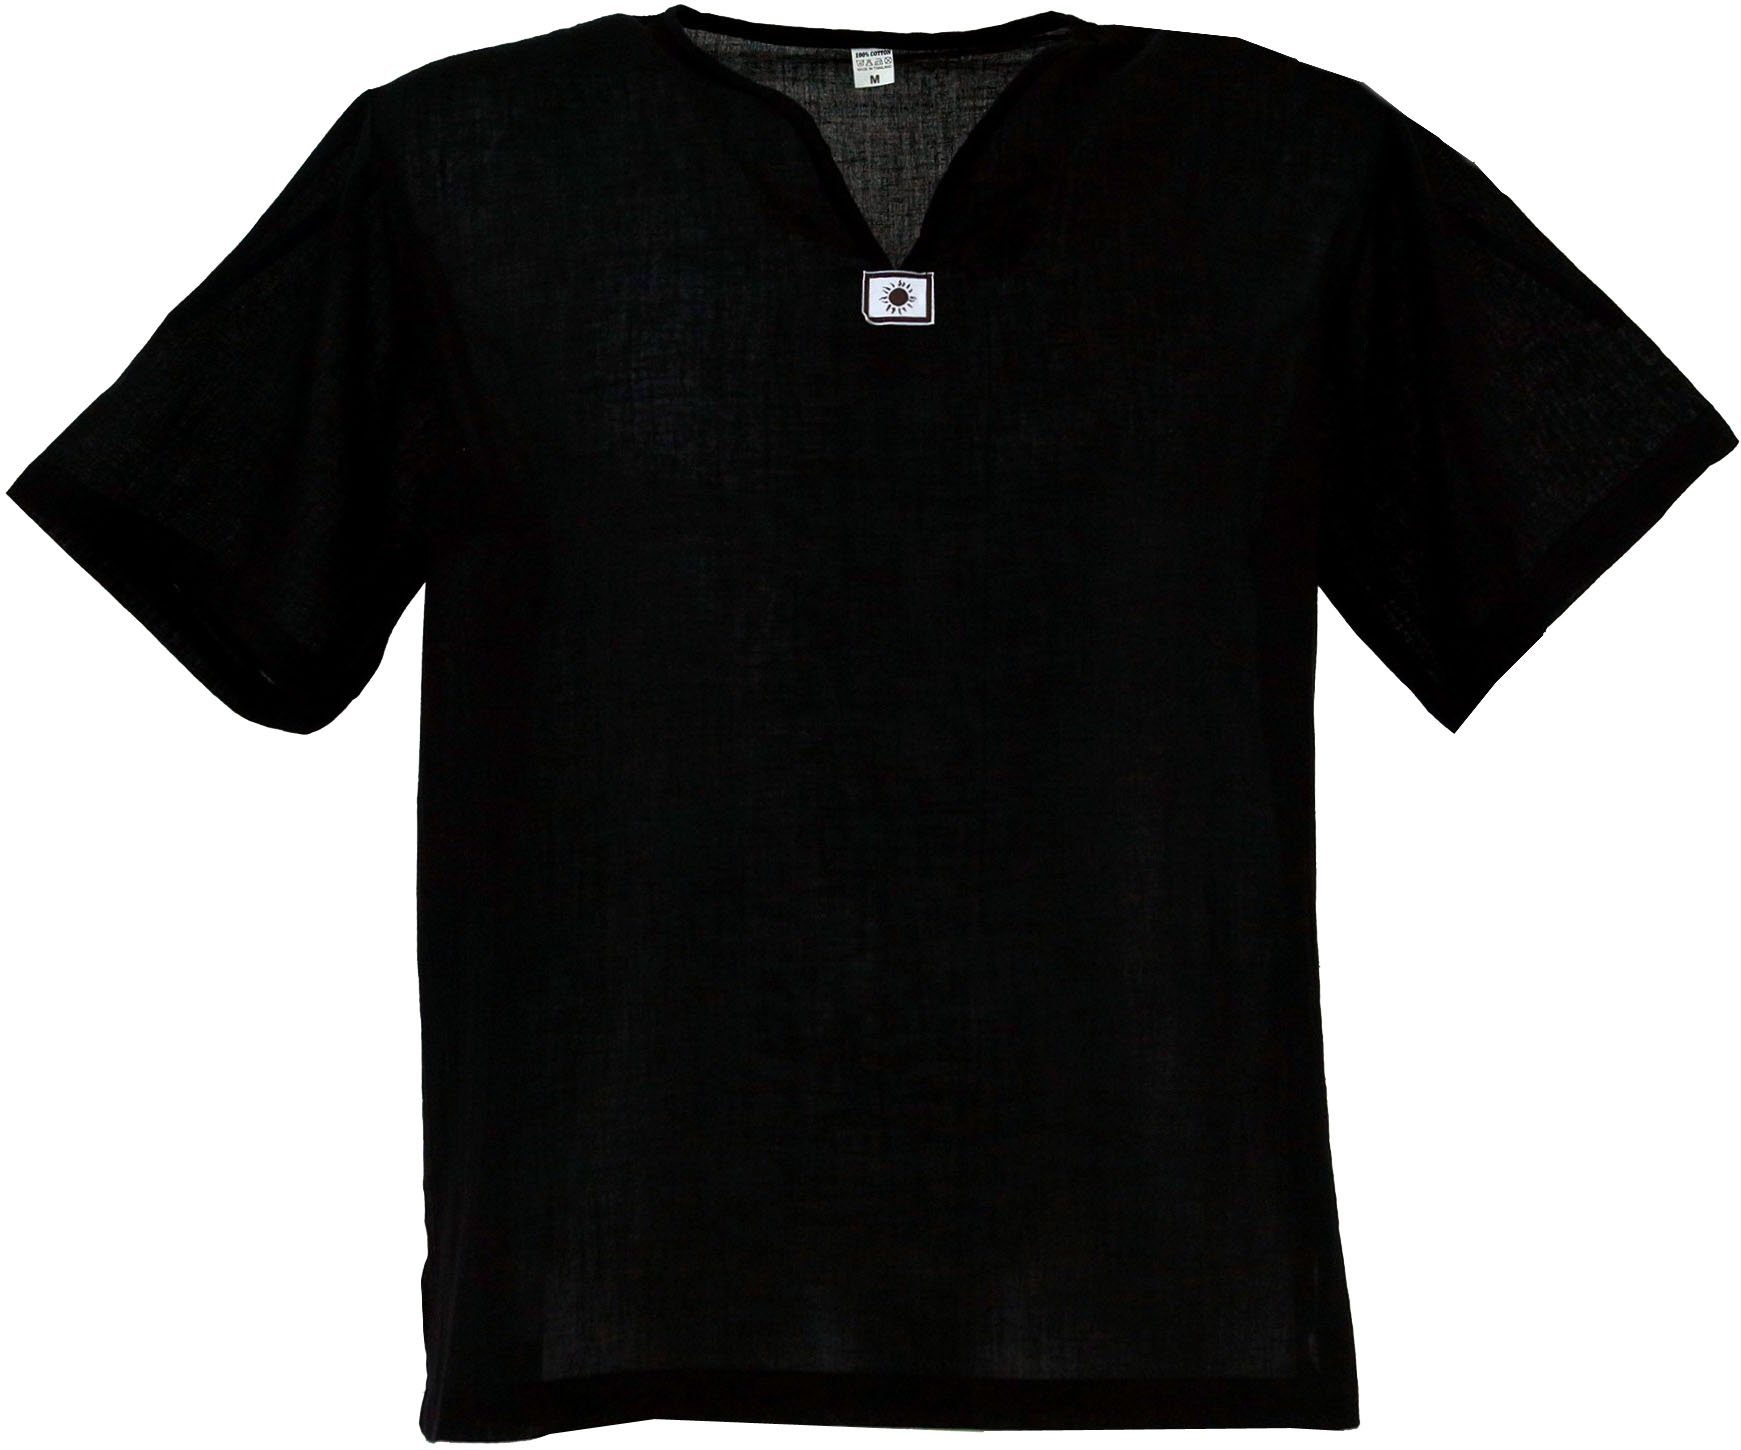 Guru-Shop Hemd & Shirt Yoga Hemd, Goa Hemd, Kurzarm, Männerhemd,.. Ethno Style, alternative Bekleidung